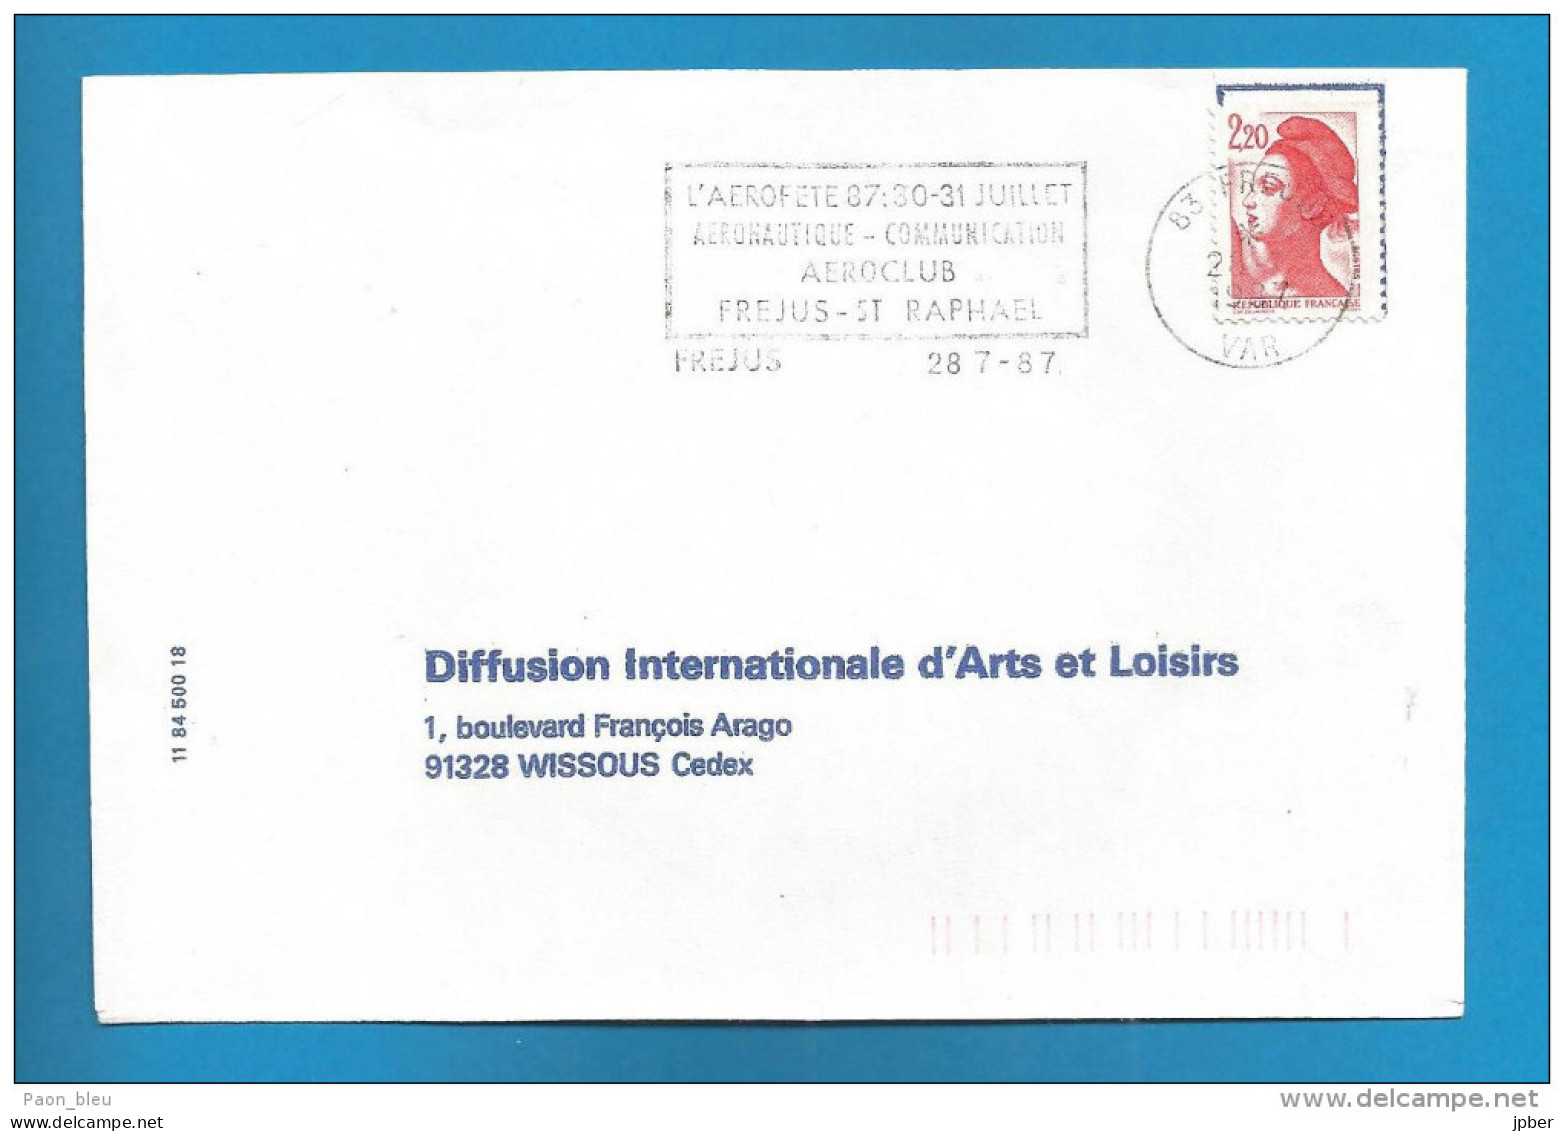 France - Flammes - Thème Aviation - Aérofête 87 - Aéronautique-communication Aéroclub Fréjus - St Raphaël - Mechanical Postmarks (Advertisement)